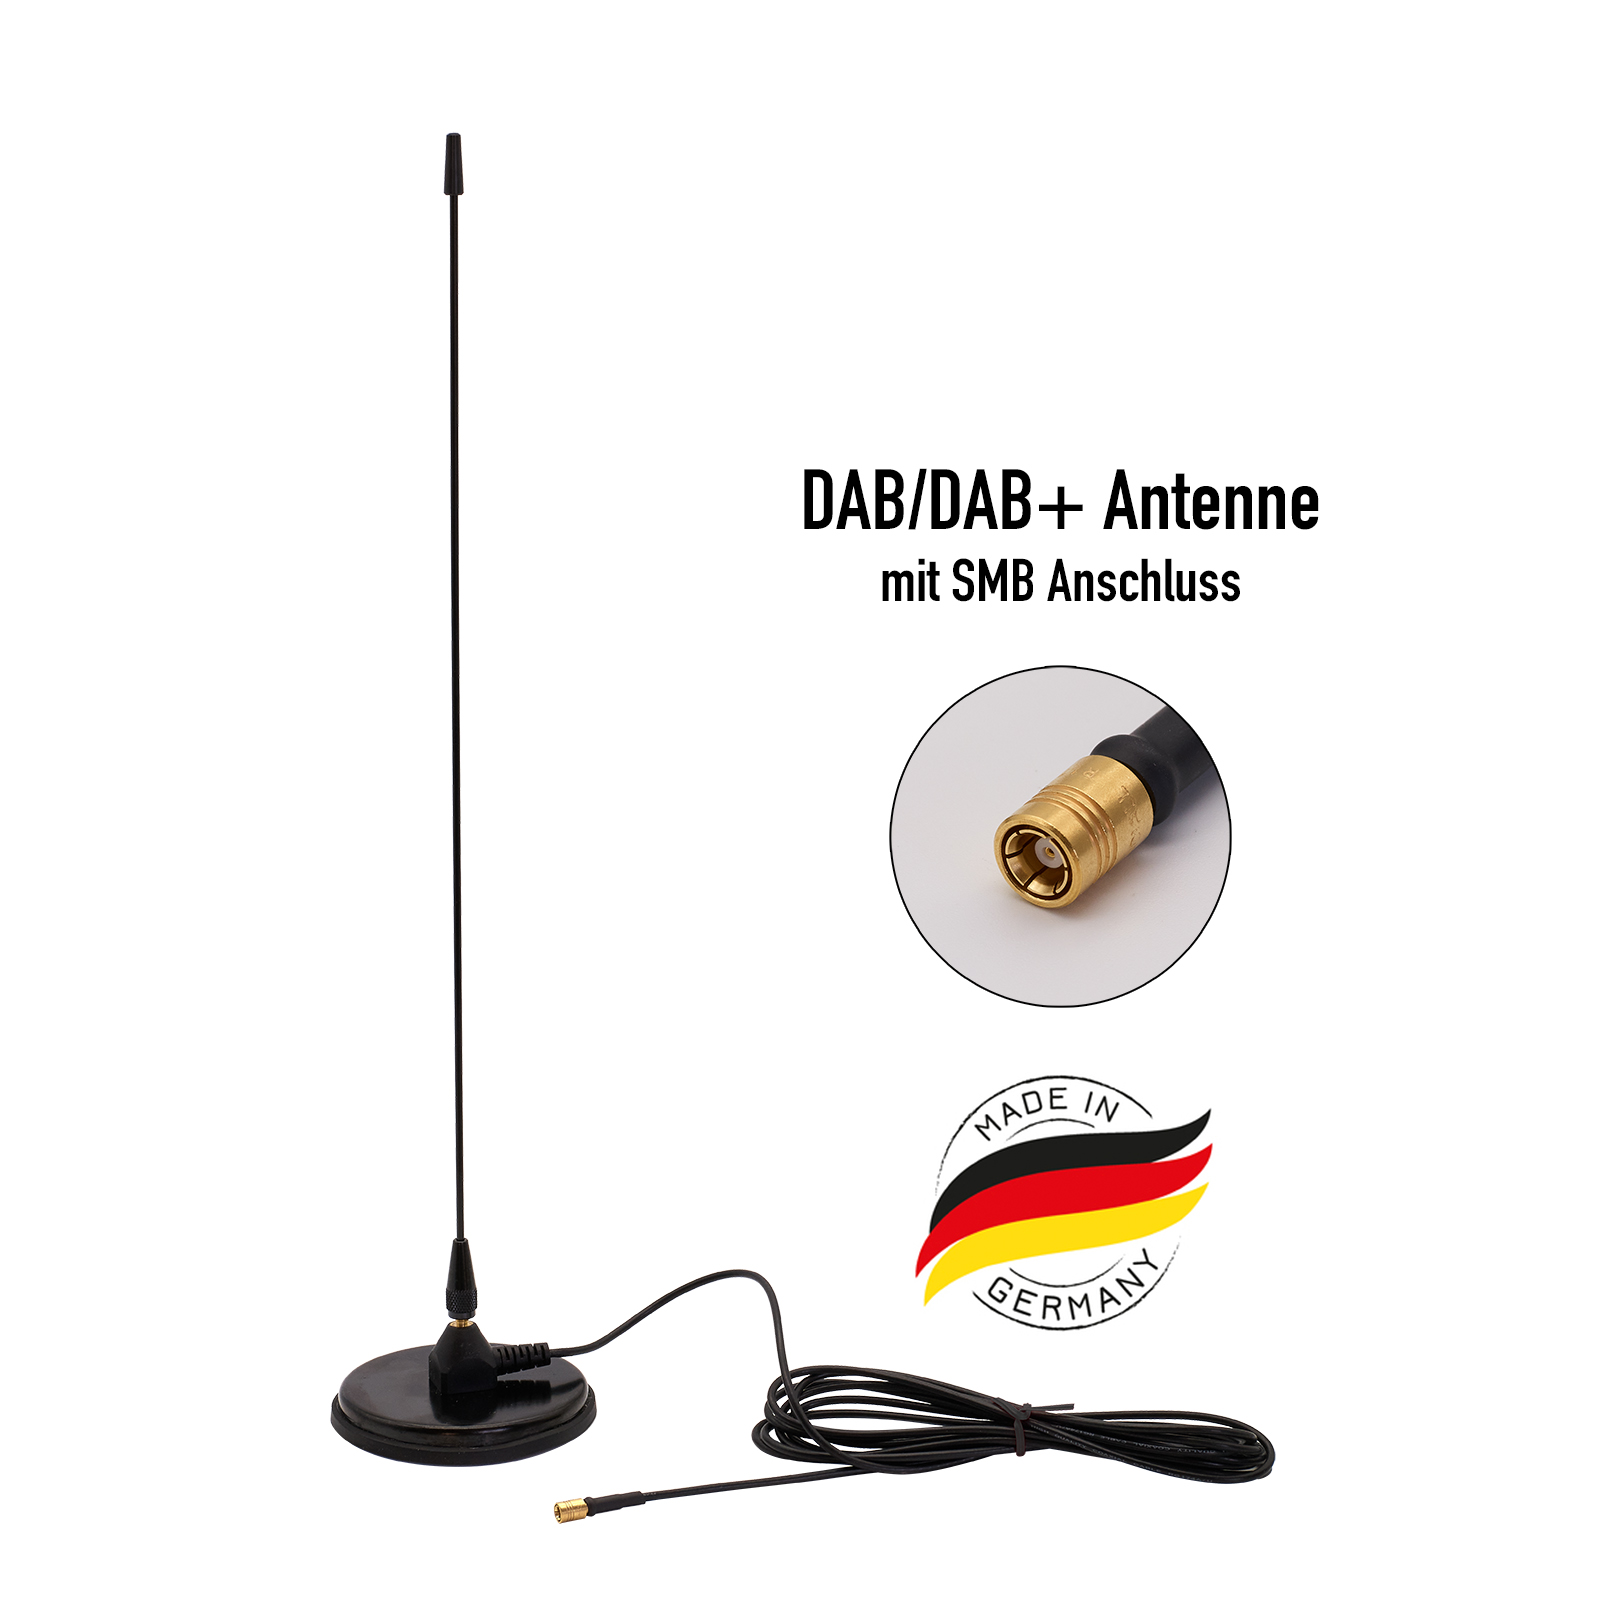 Originale DAB+ Antenne nachrüsten - Startseite Forum